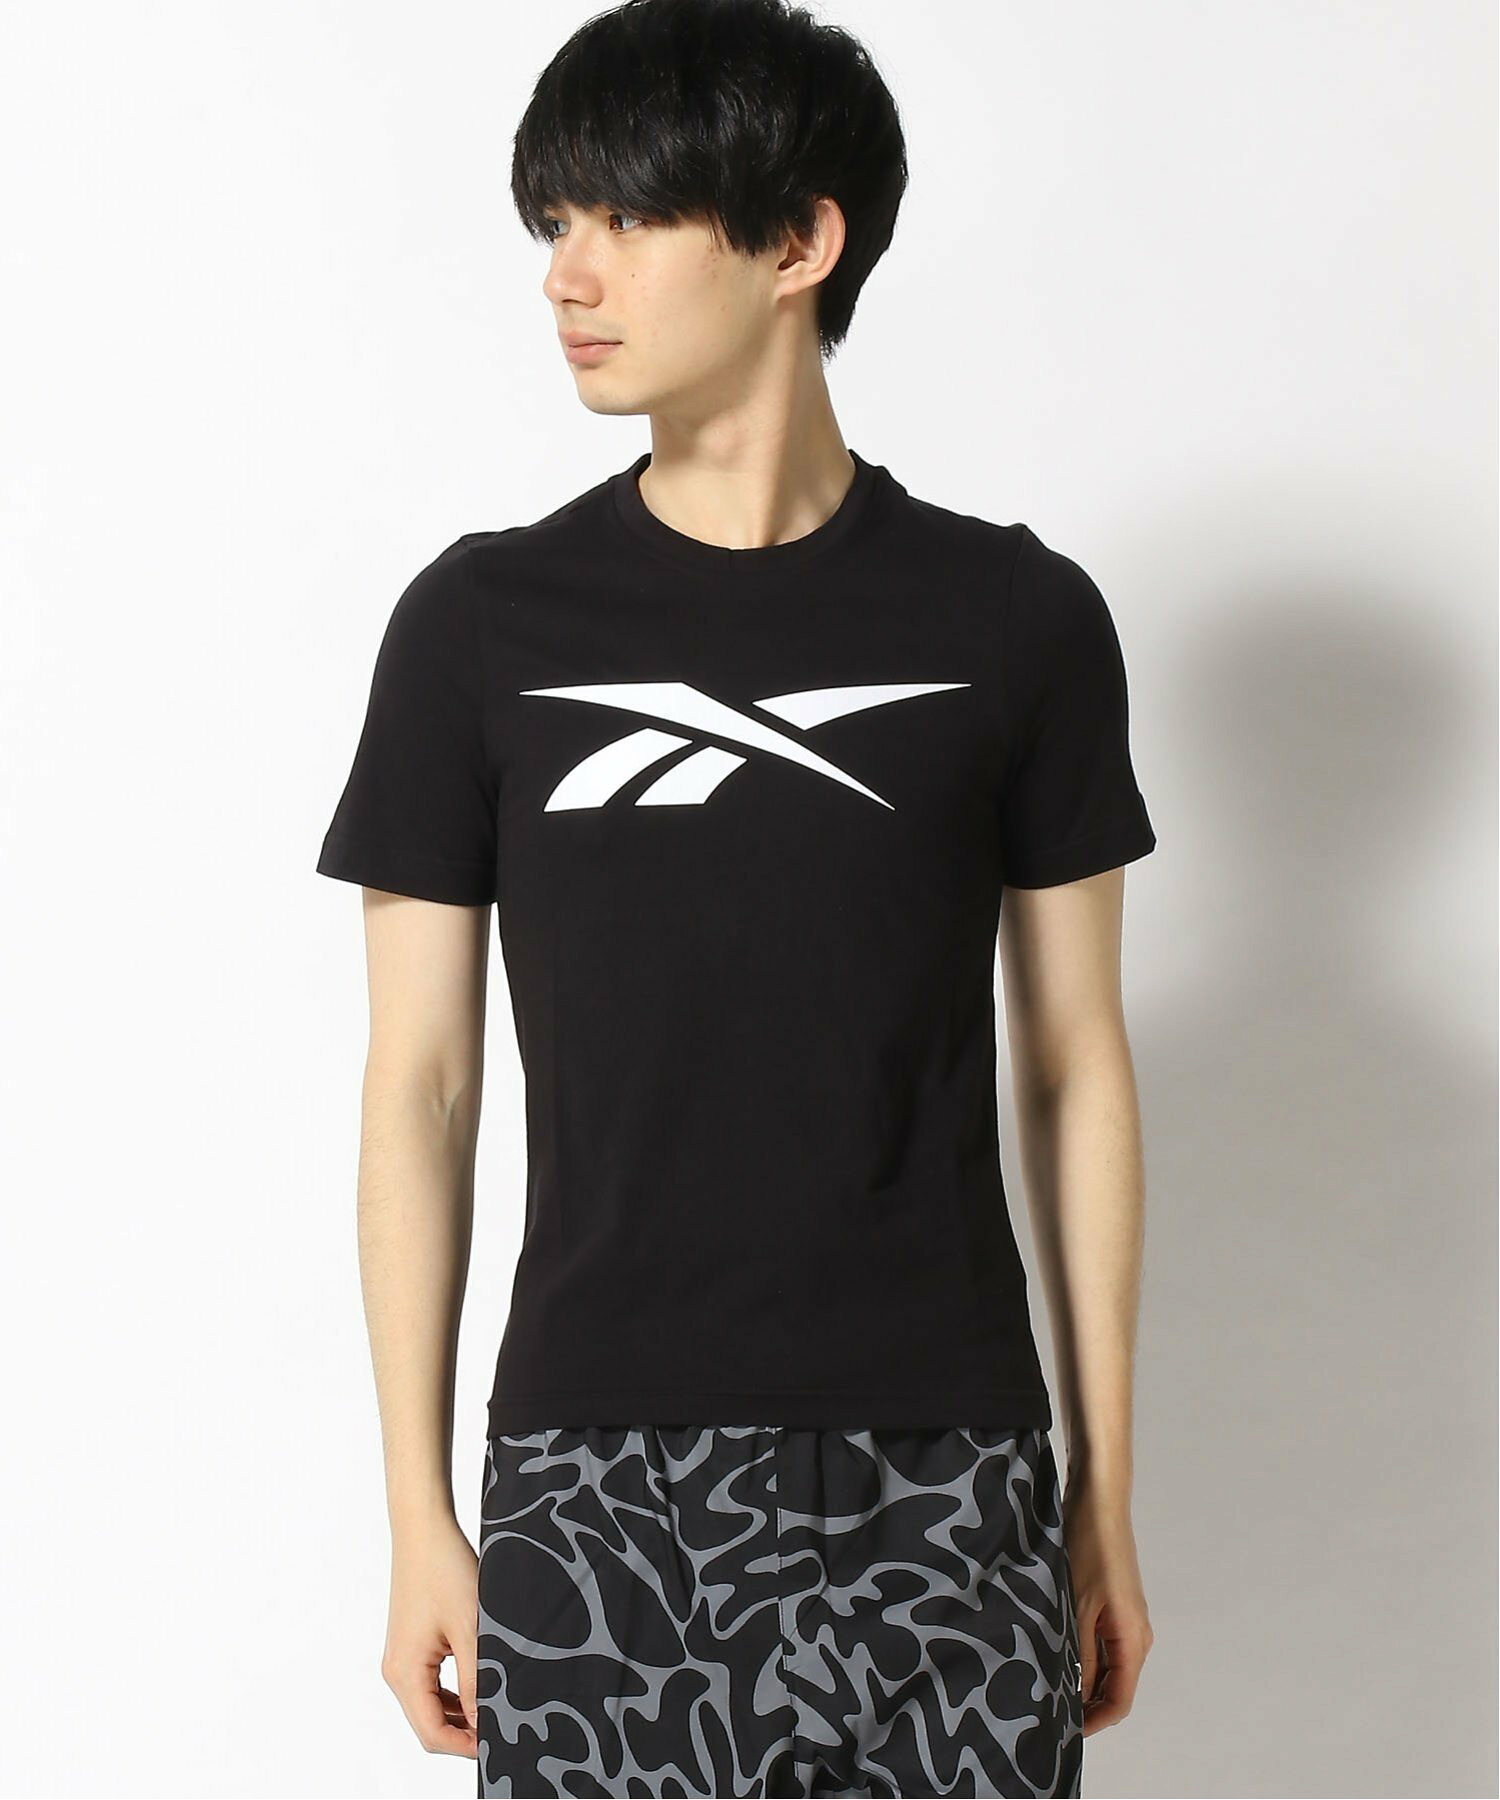 グラフィック シリーズ ベクター Tシャツ / Graphic Series Vector T-Shirt